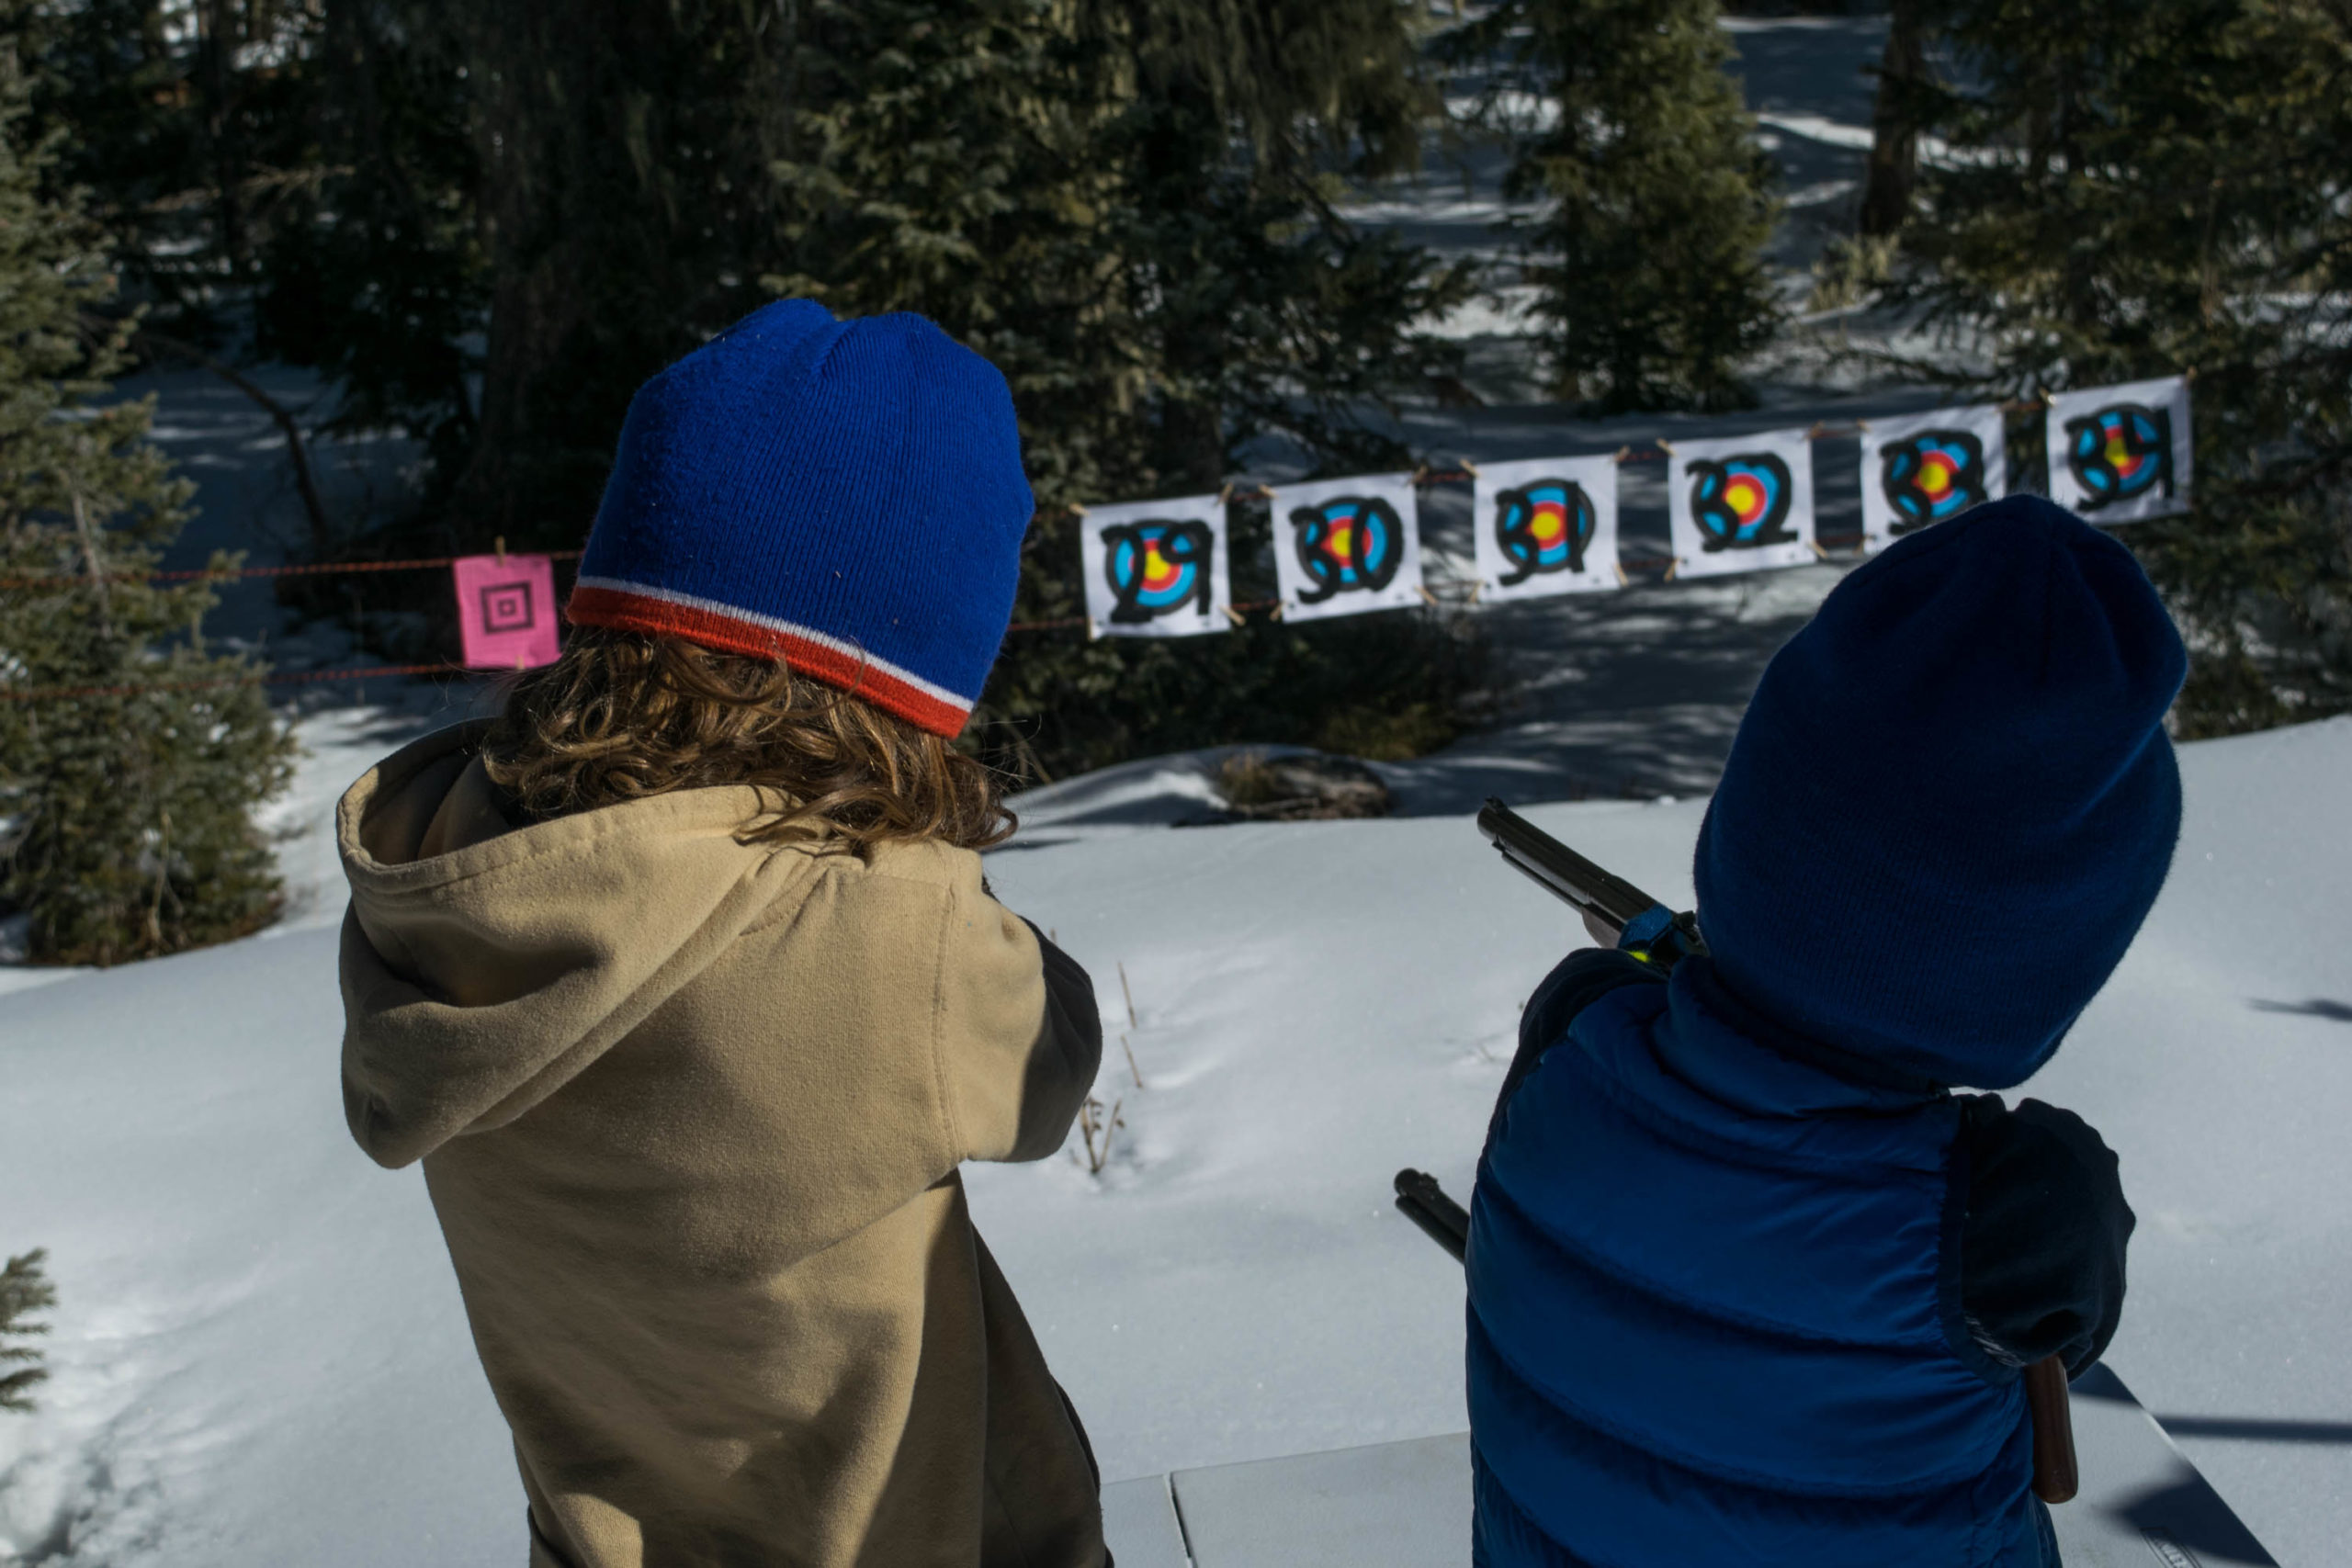 Kids shooting bb guns while skiing